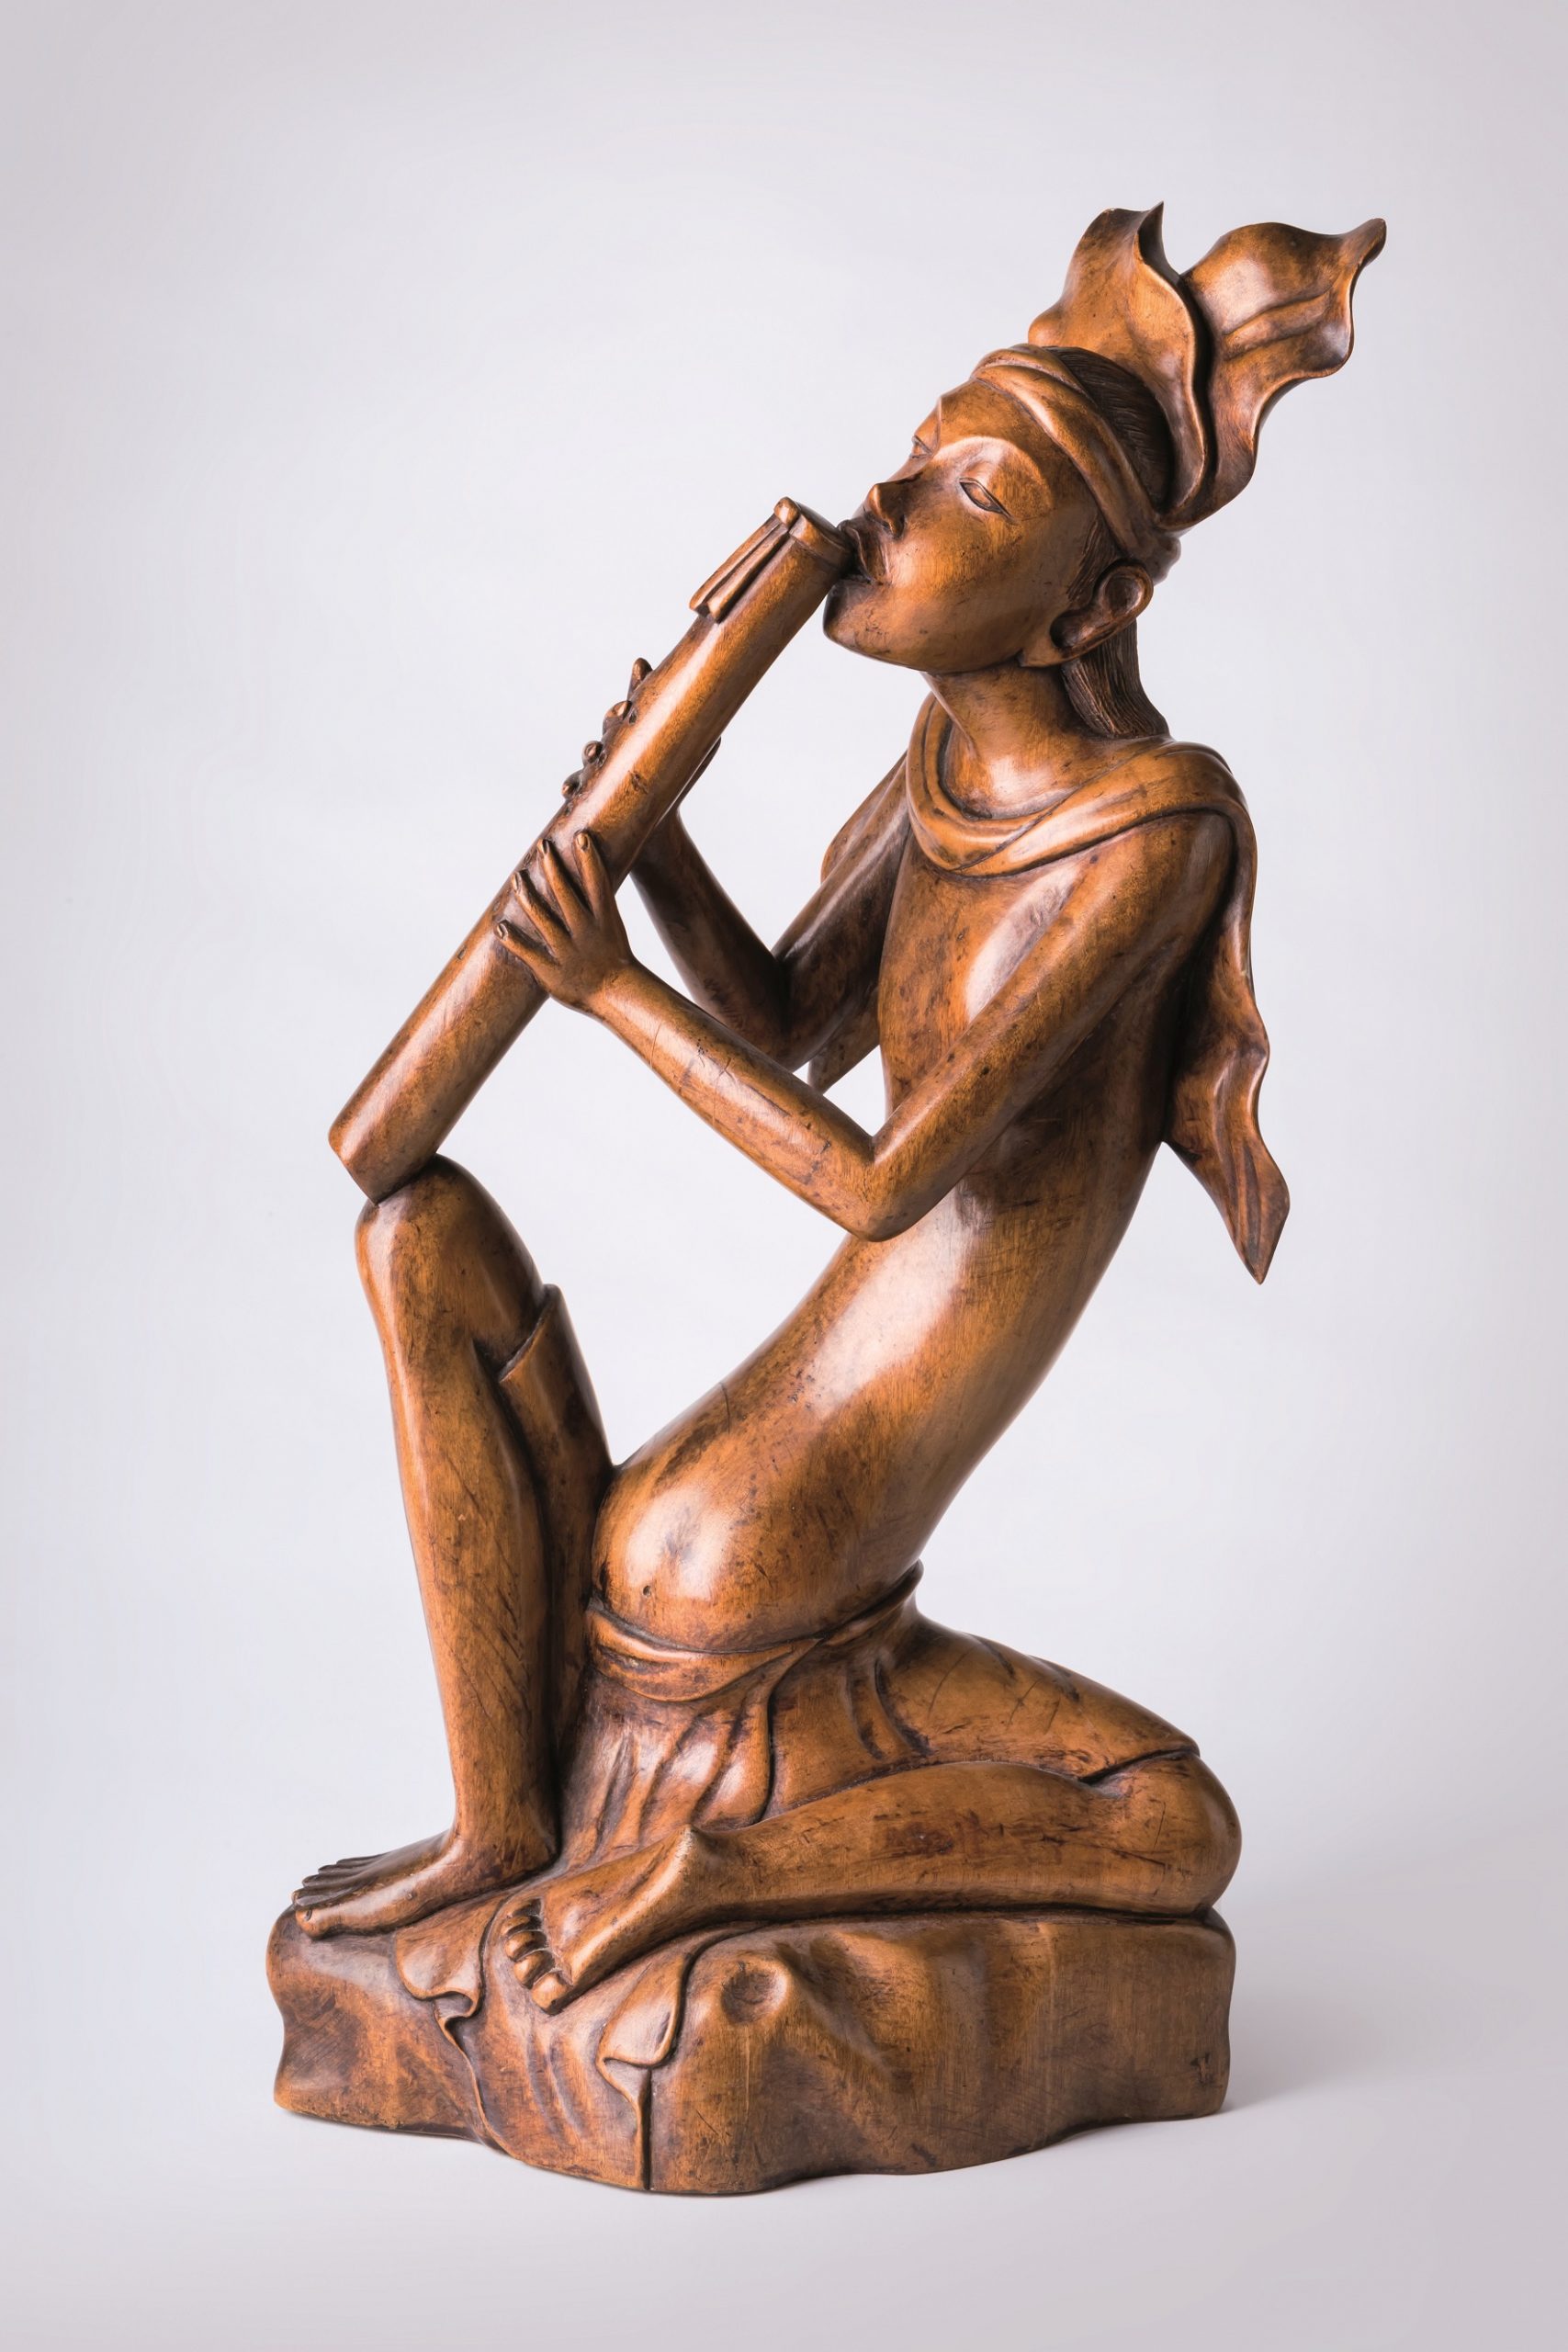 Anonimowy rzeźbiarz balijski „Mężczyzna grający na sulingu”, ok. 1930 (źródło: materiały prasowe organizatora)